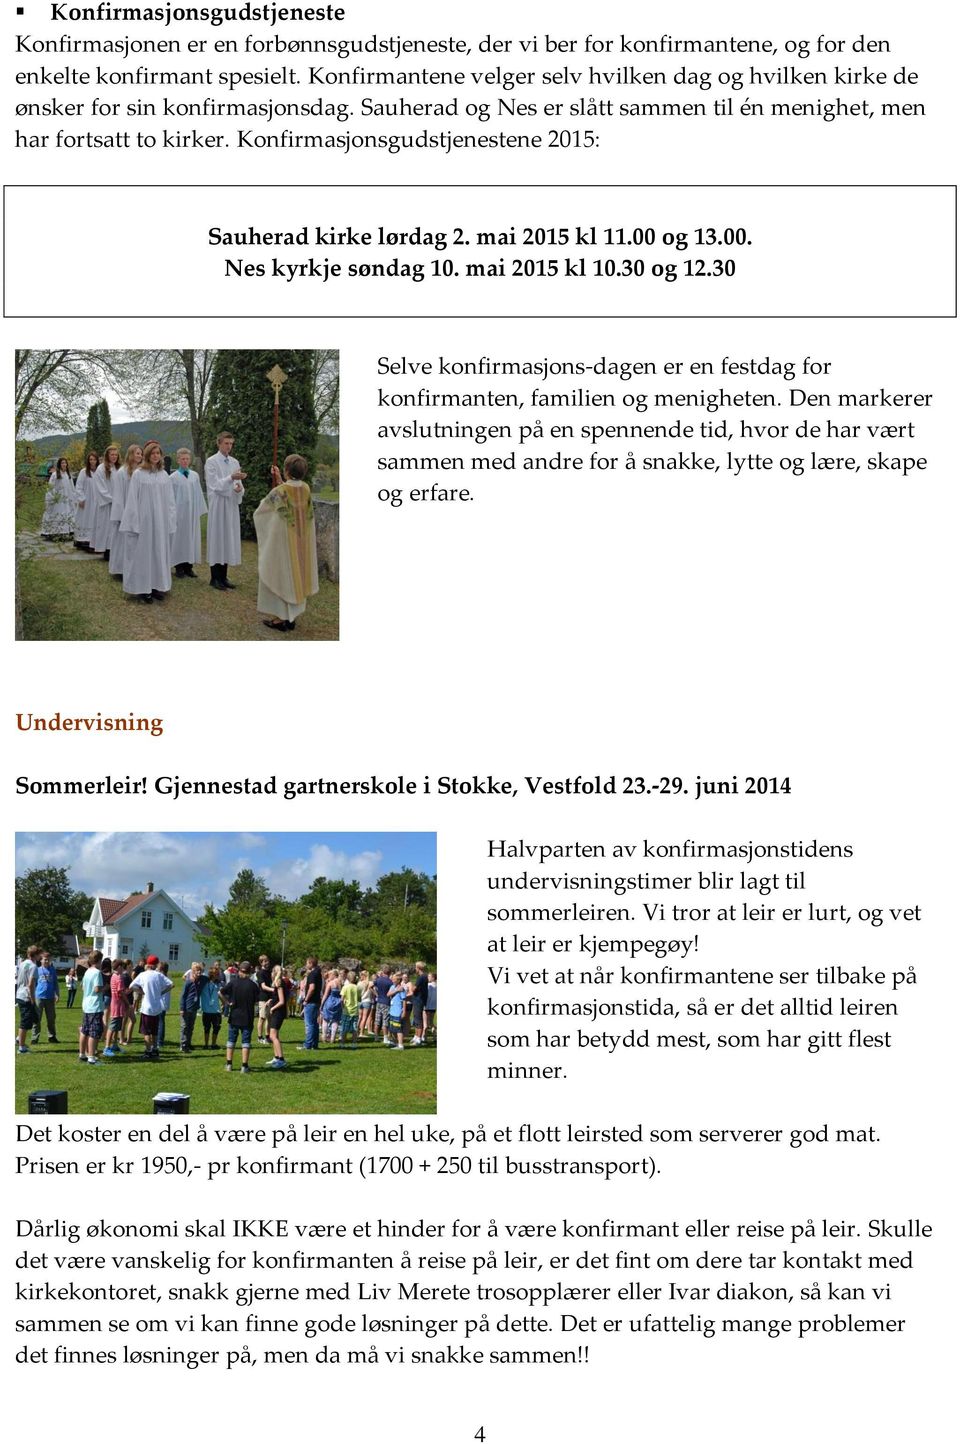 Konfirmasjonsgudstjenestene 2015: Sauherad kirke lørdag 2. mai 2015 kl 11.00 og 13.00. Nes kyrkje søndag 10. mai 2015 kl 10.30 og 12.